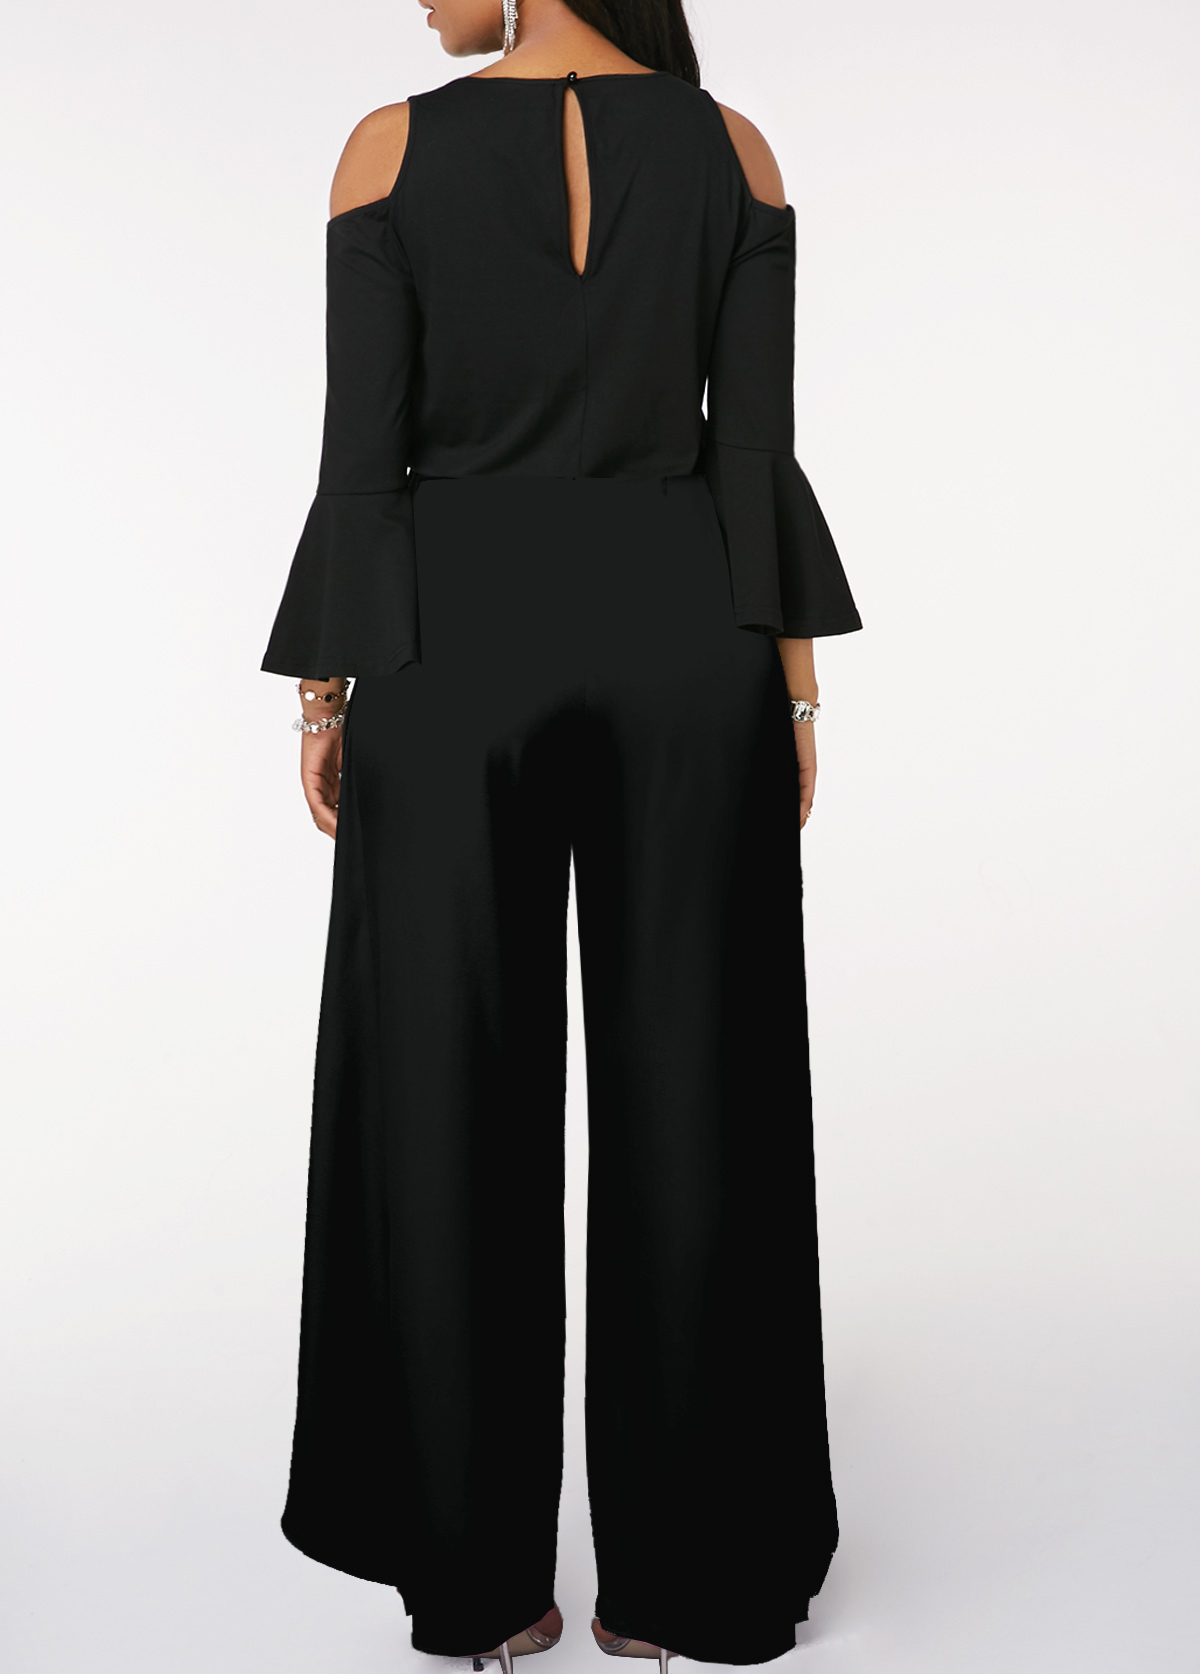 Sequin Long Sleeve Black V Neck Jumpsuit